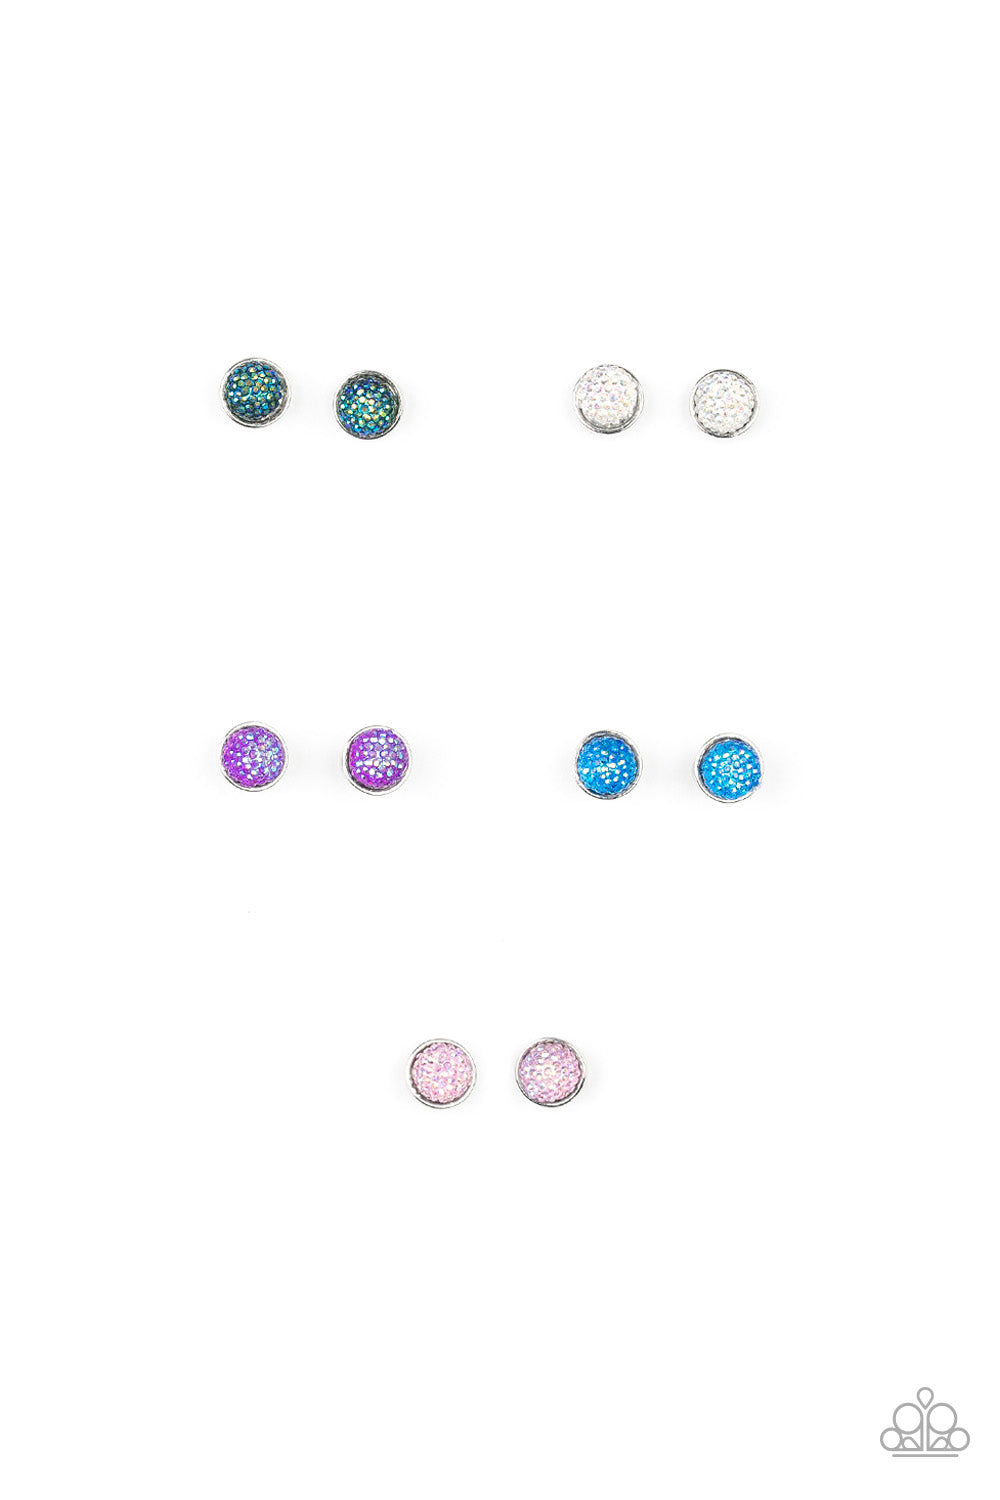 Starlet Shimmer Glittery Iridescent Post Earrings – Bling By Christina